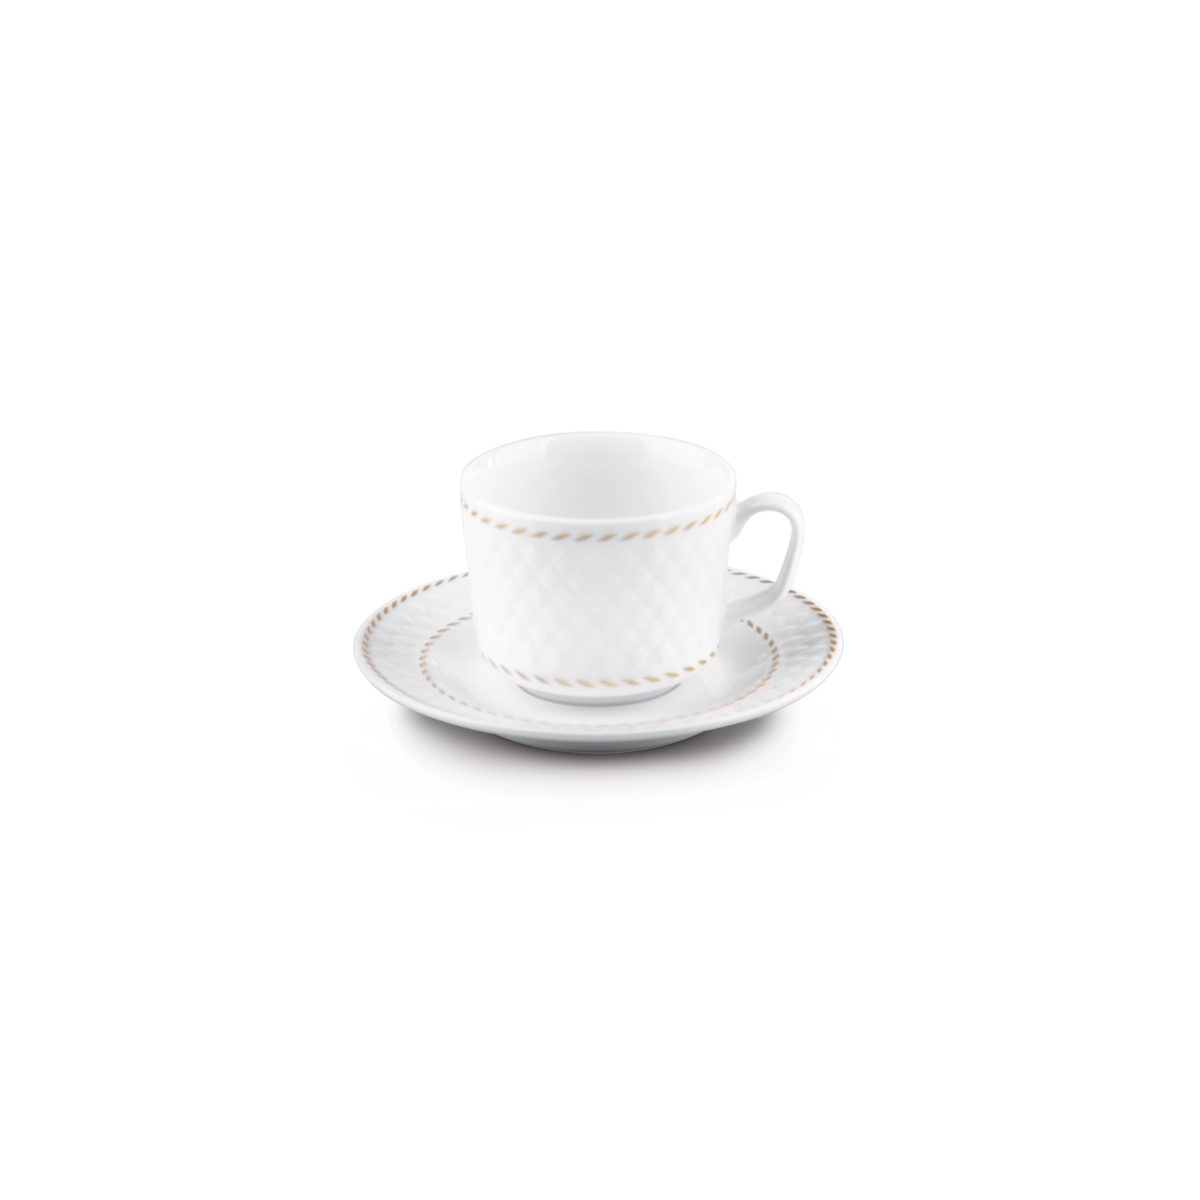 سرویس چینی 12 پارچه چای خوری میلانو سفید